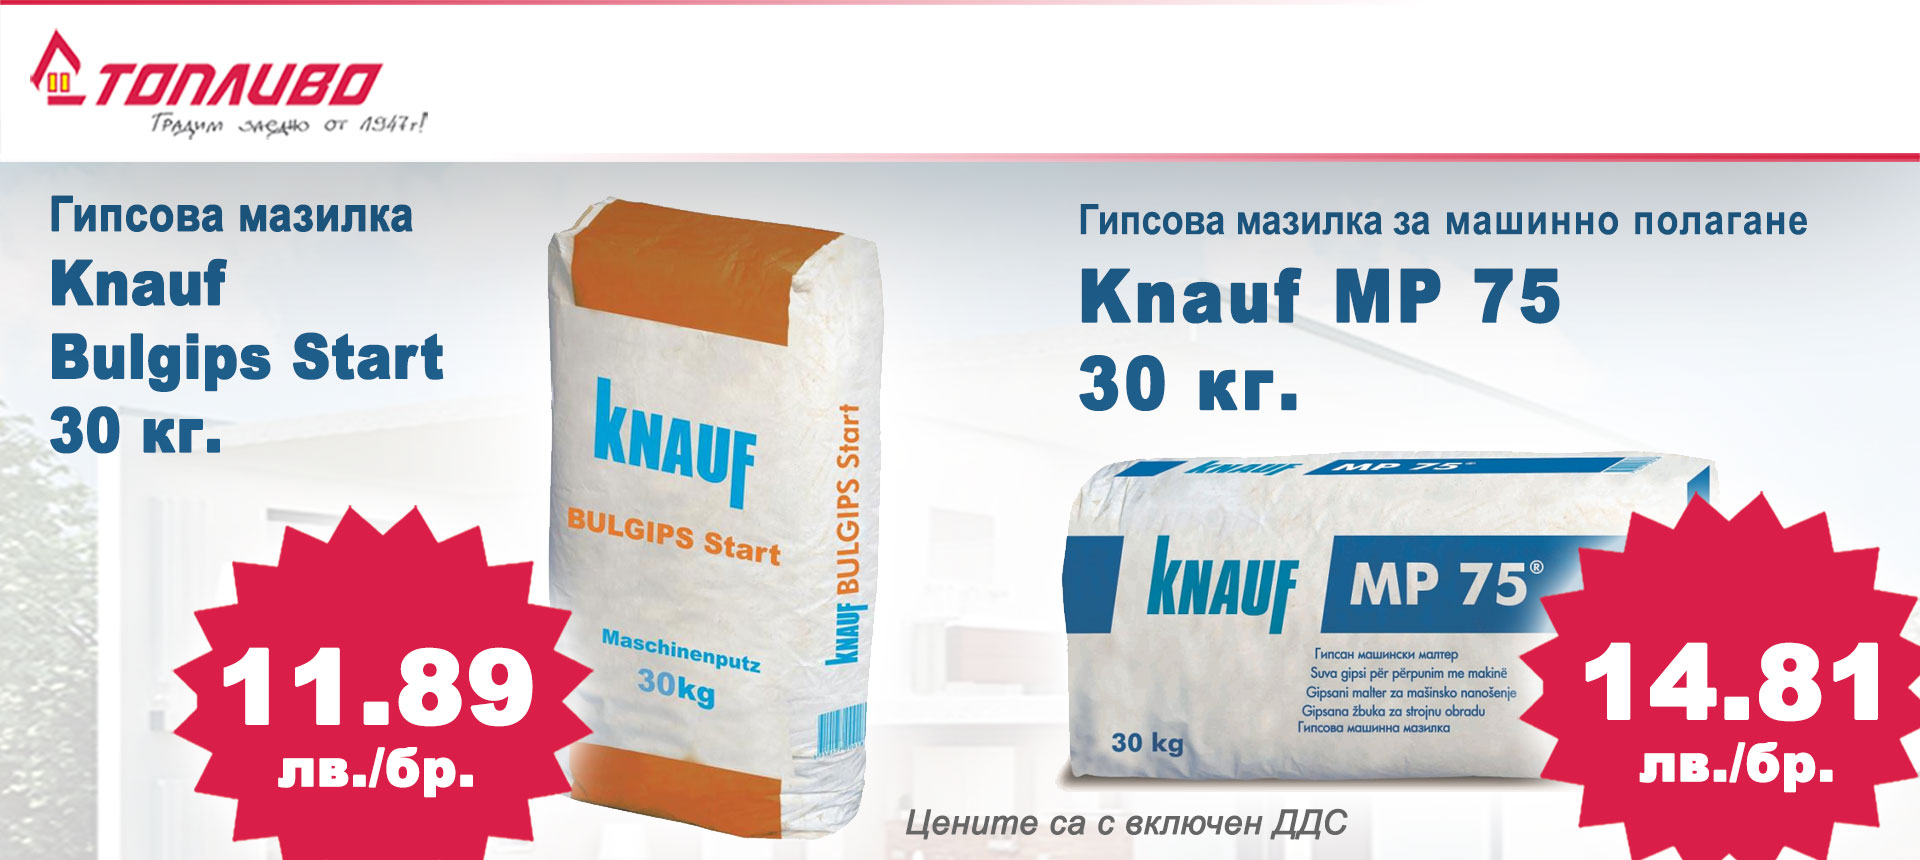 Knauf Bulgips Start и Knauf MP 75 на специални цени